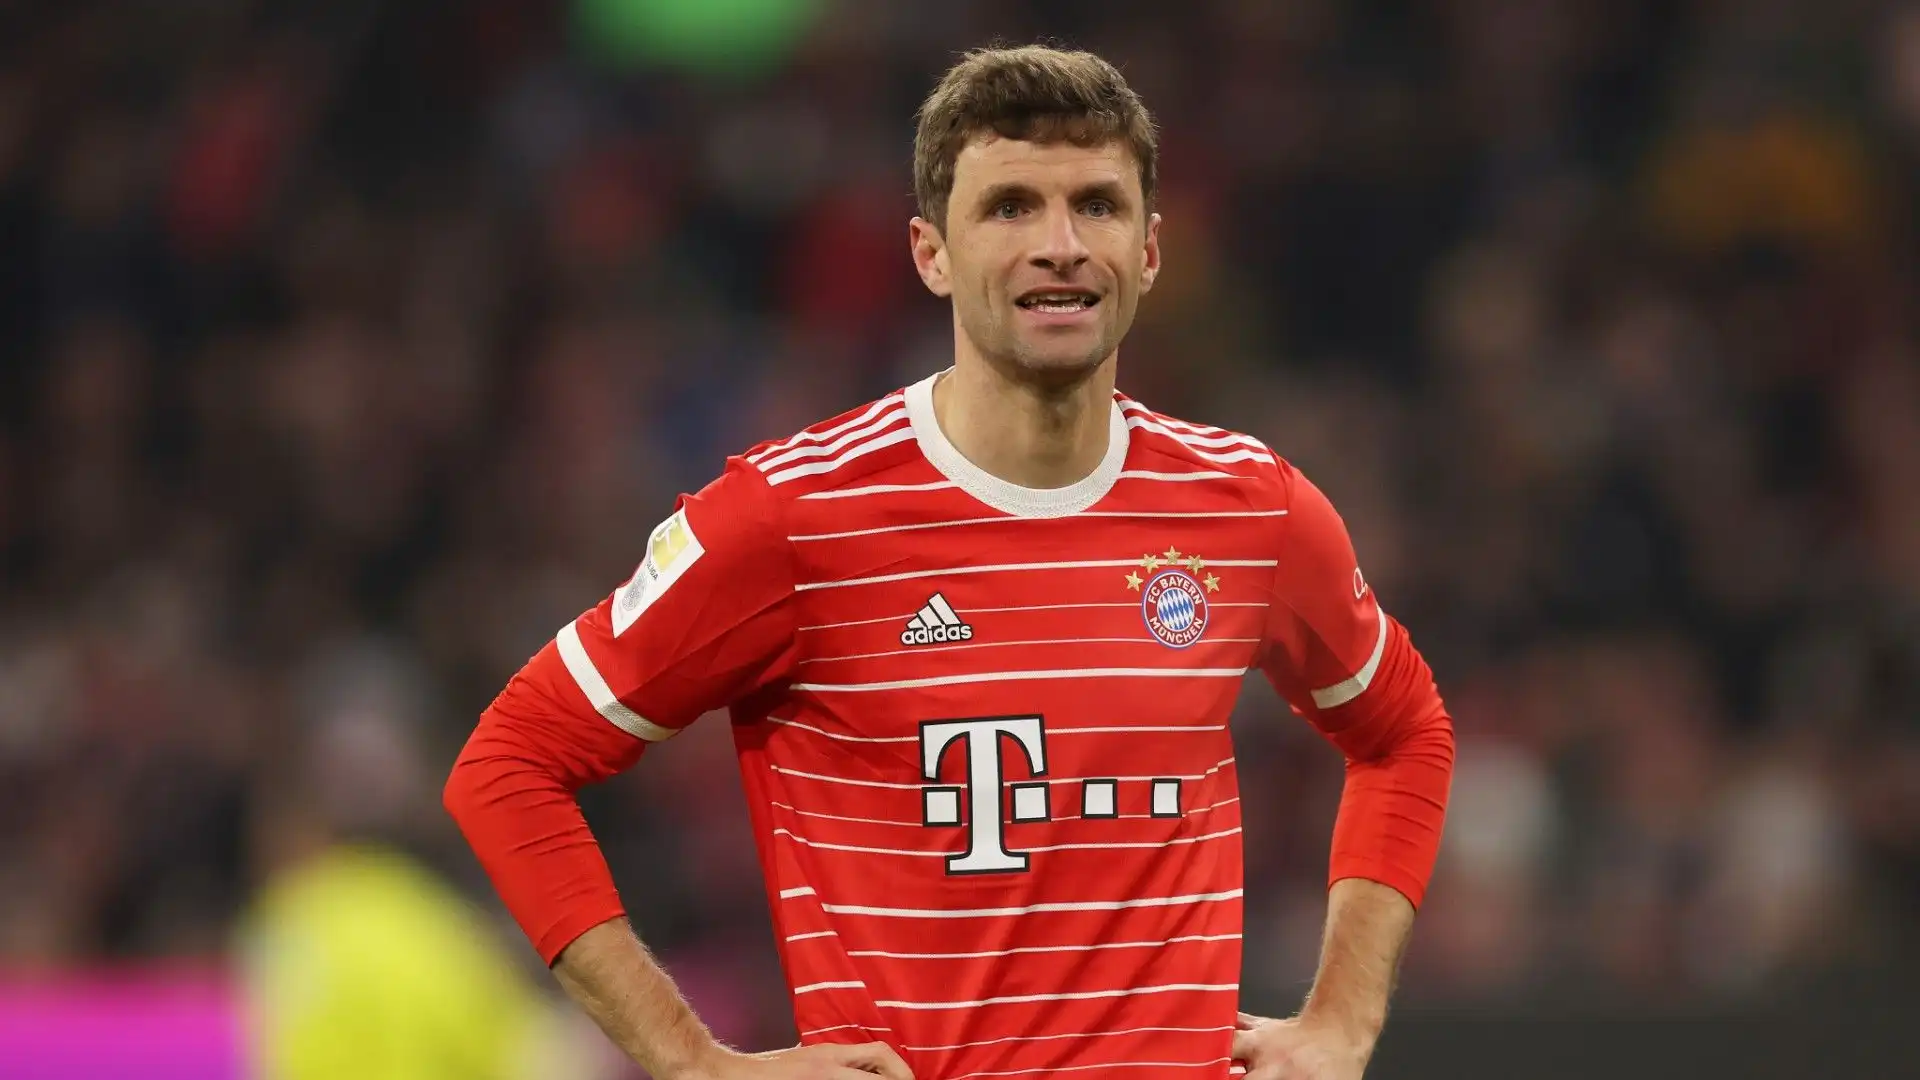 E' difficilissimo immaginare che Muller non chiuda la carriera con il Bayern Monaco